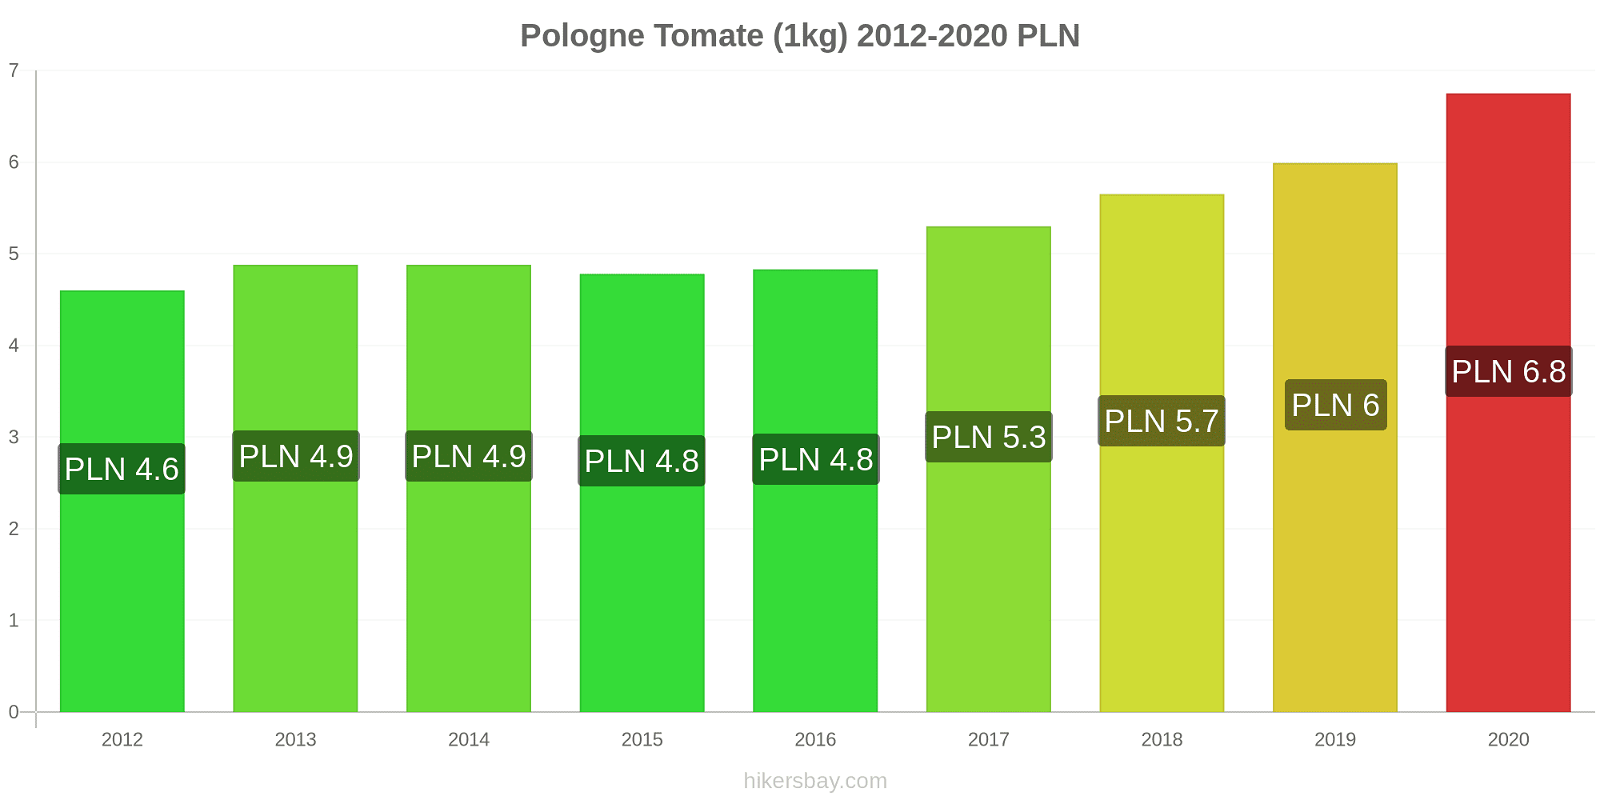 Pologne changements de prix Tomate (1kg) hikersbay.com